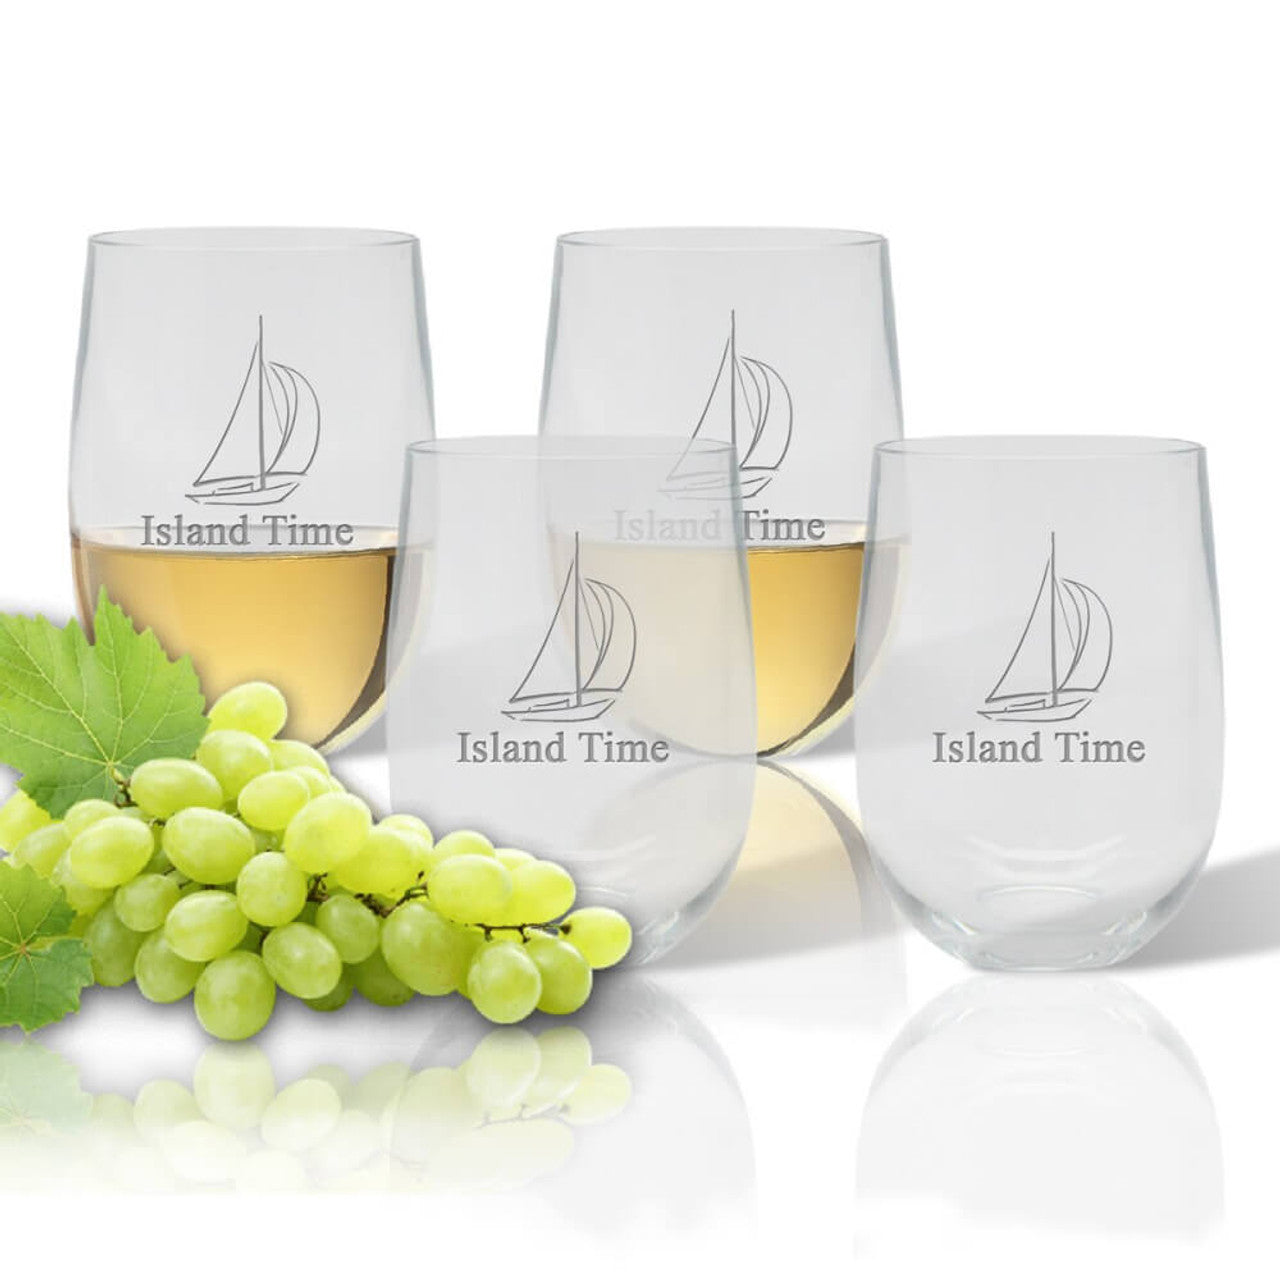 Plastic wine glasses- monogram design